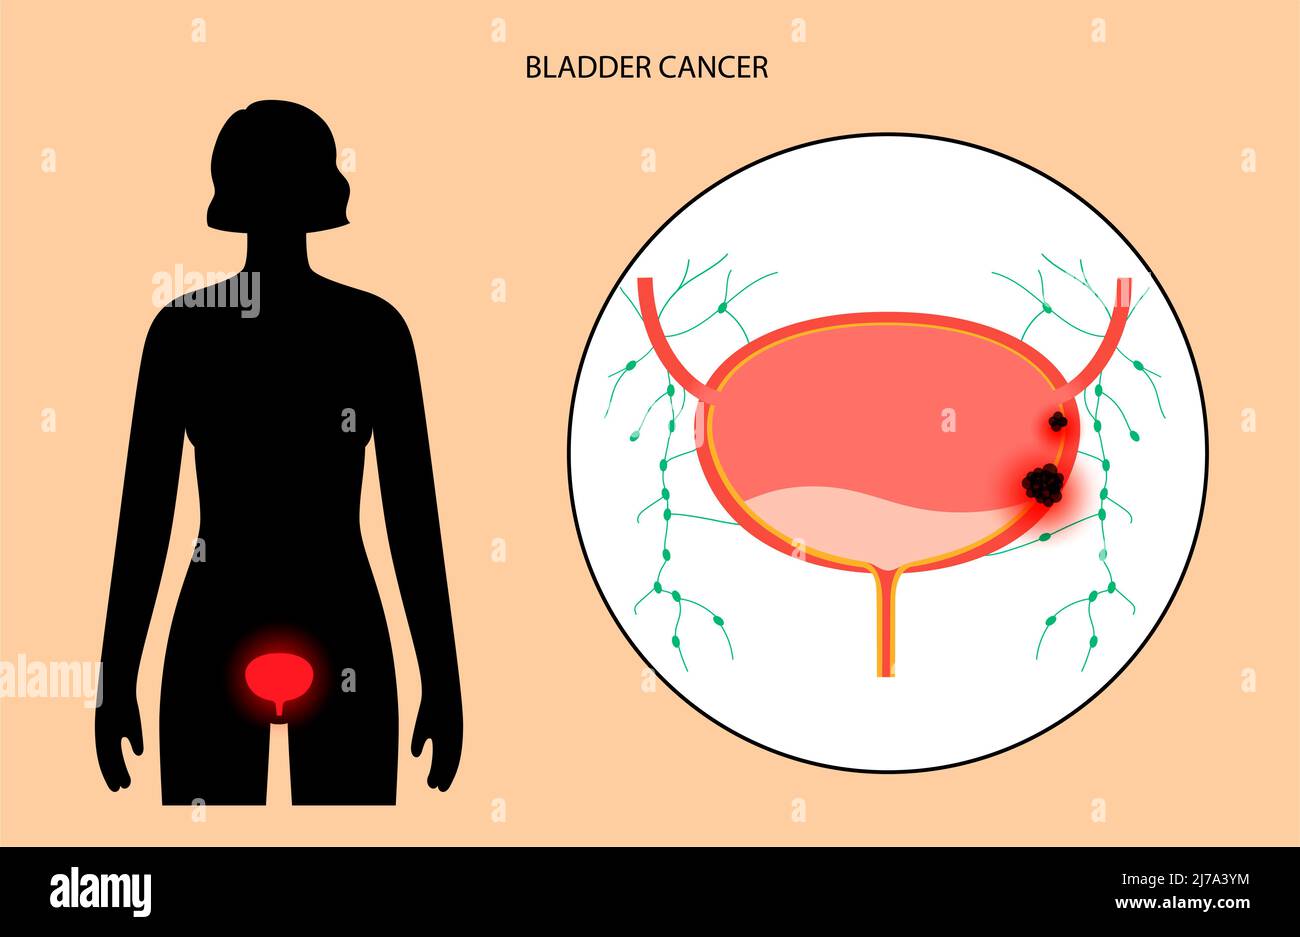 Bladder cancer stages, illustration Stock Photo